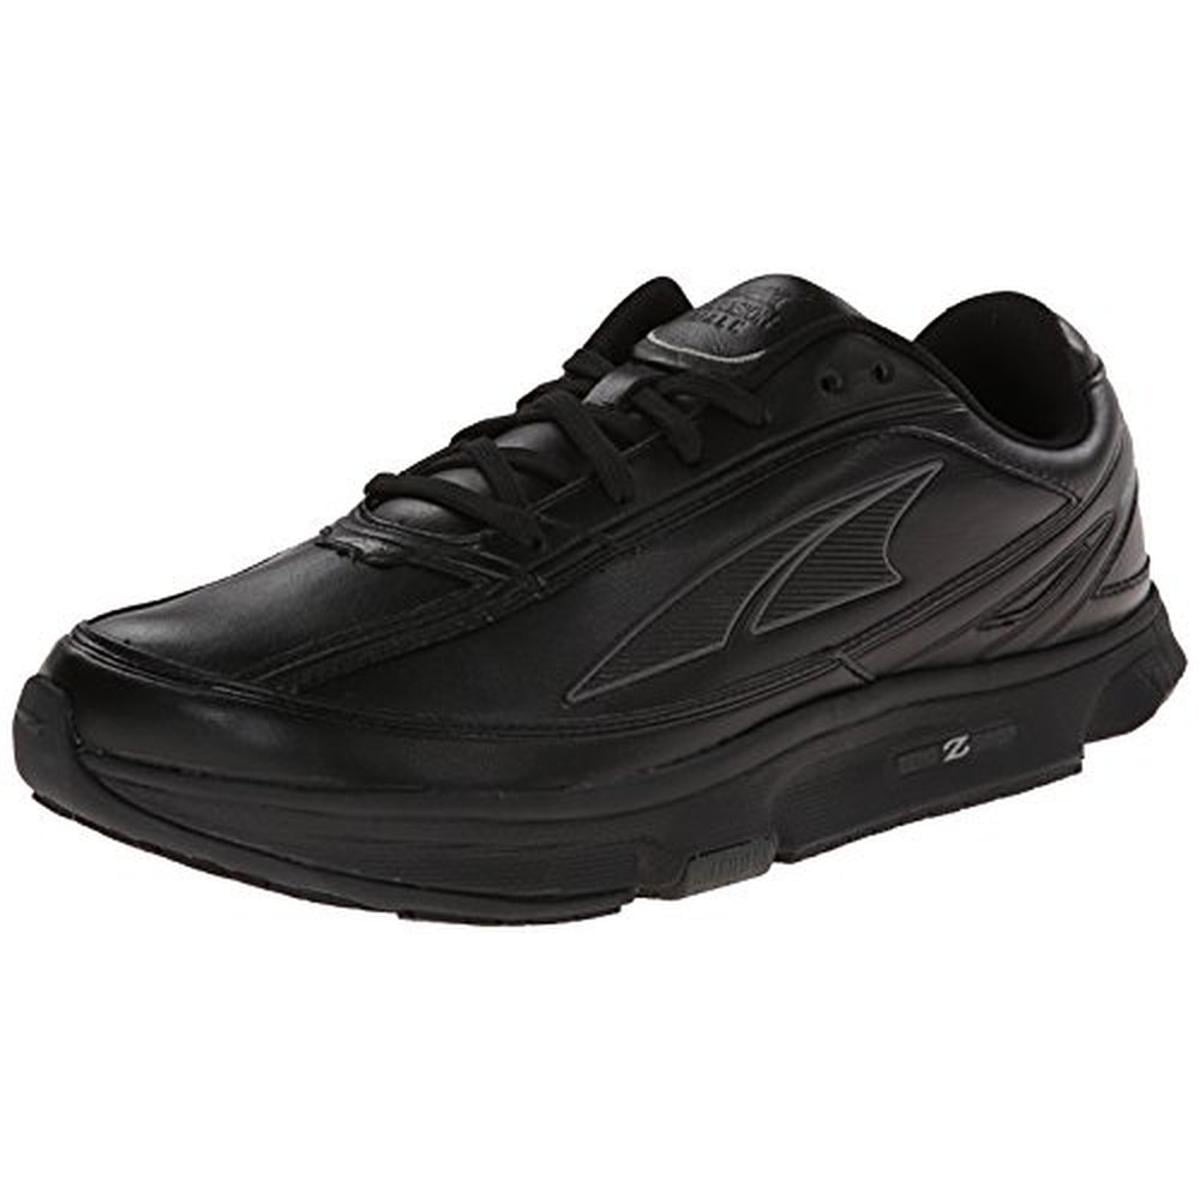 Altra Men's Provision Faux Leather Lace-Up Walking Shoes - Walmart.com